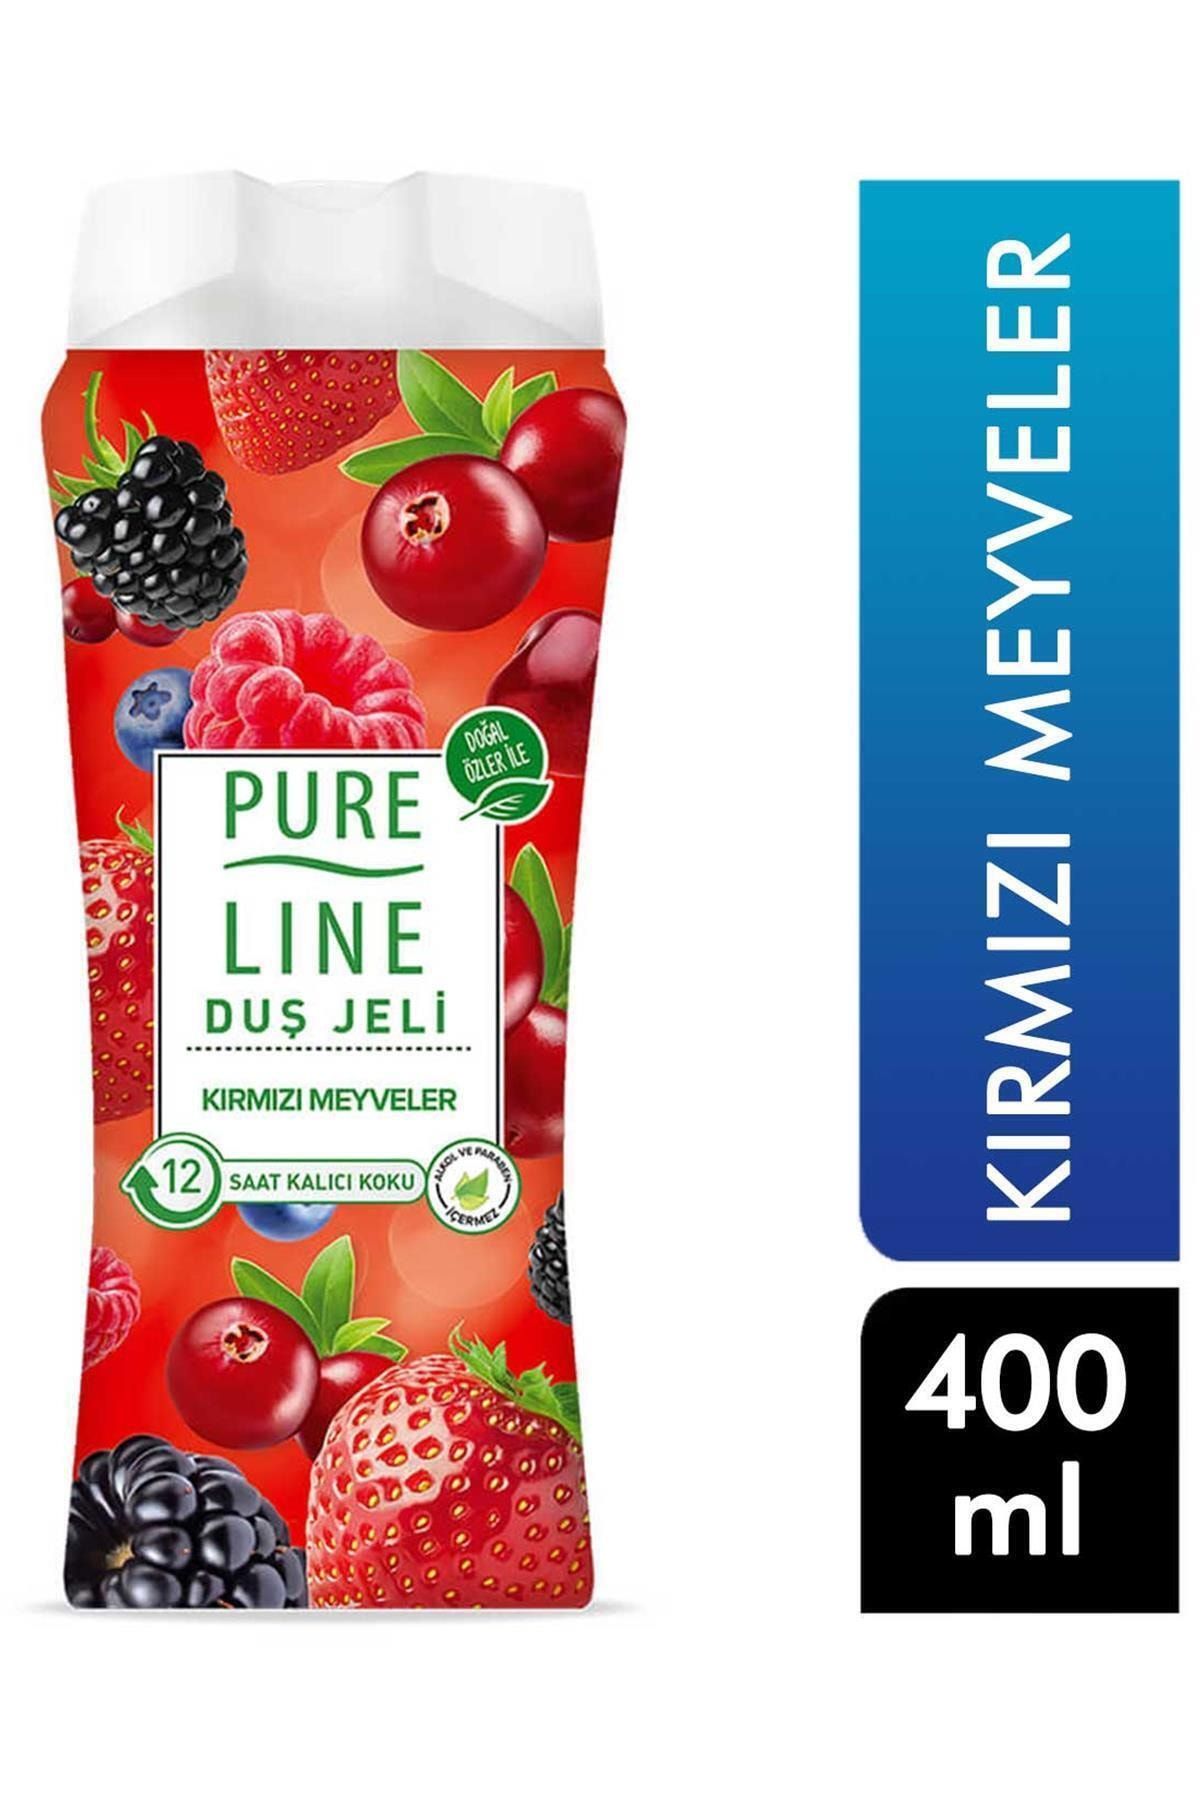 Pure Line Pure Lıne Pureline Duş Jeli 400 Ml Kırmızı Meyveler 8690637917998 Kategori: Duş Jeli